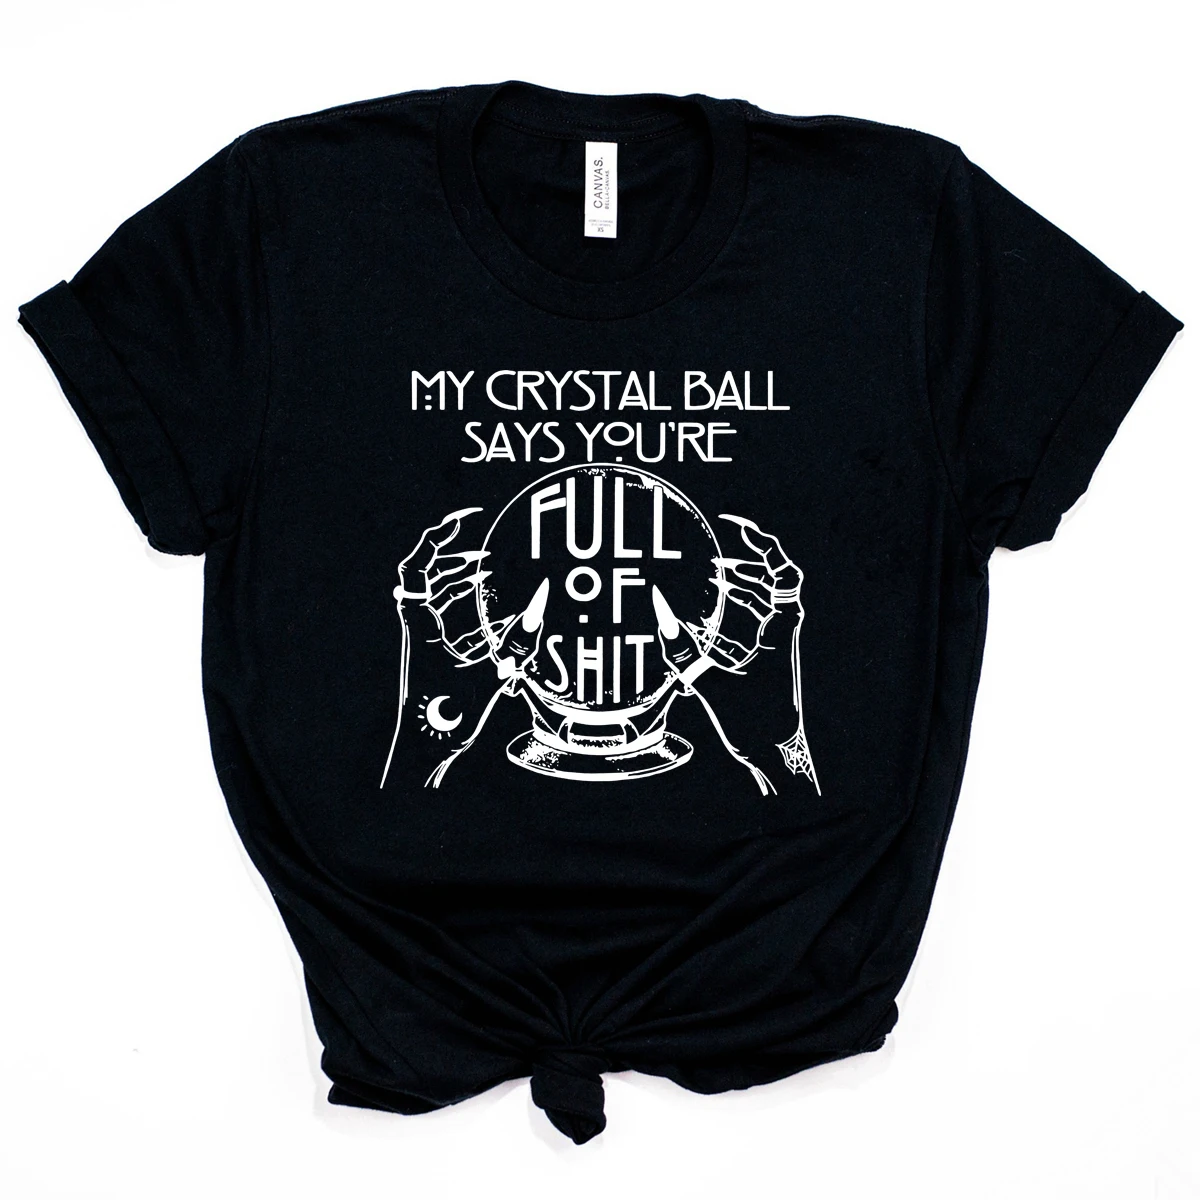 Promoción Camisa gótica Unisex, camisa de mano mística, bola de cristal, adivinador, divertida, bruja, camisas gótica KjwneKNj7jD